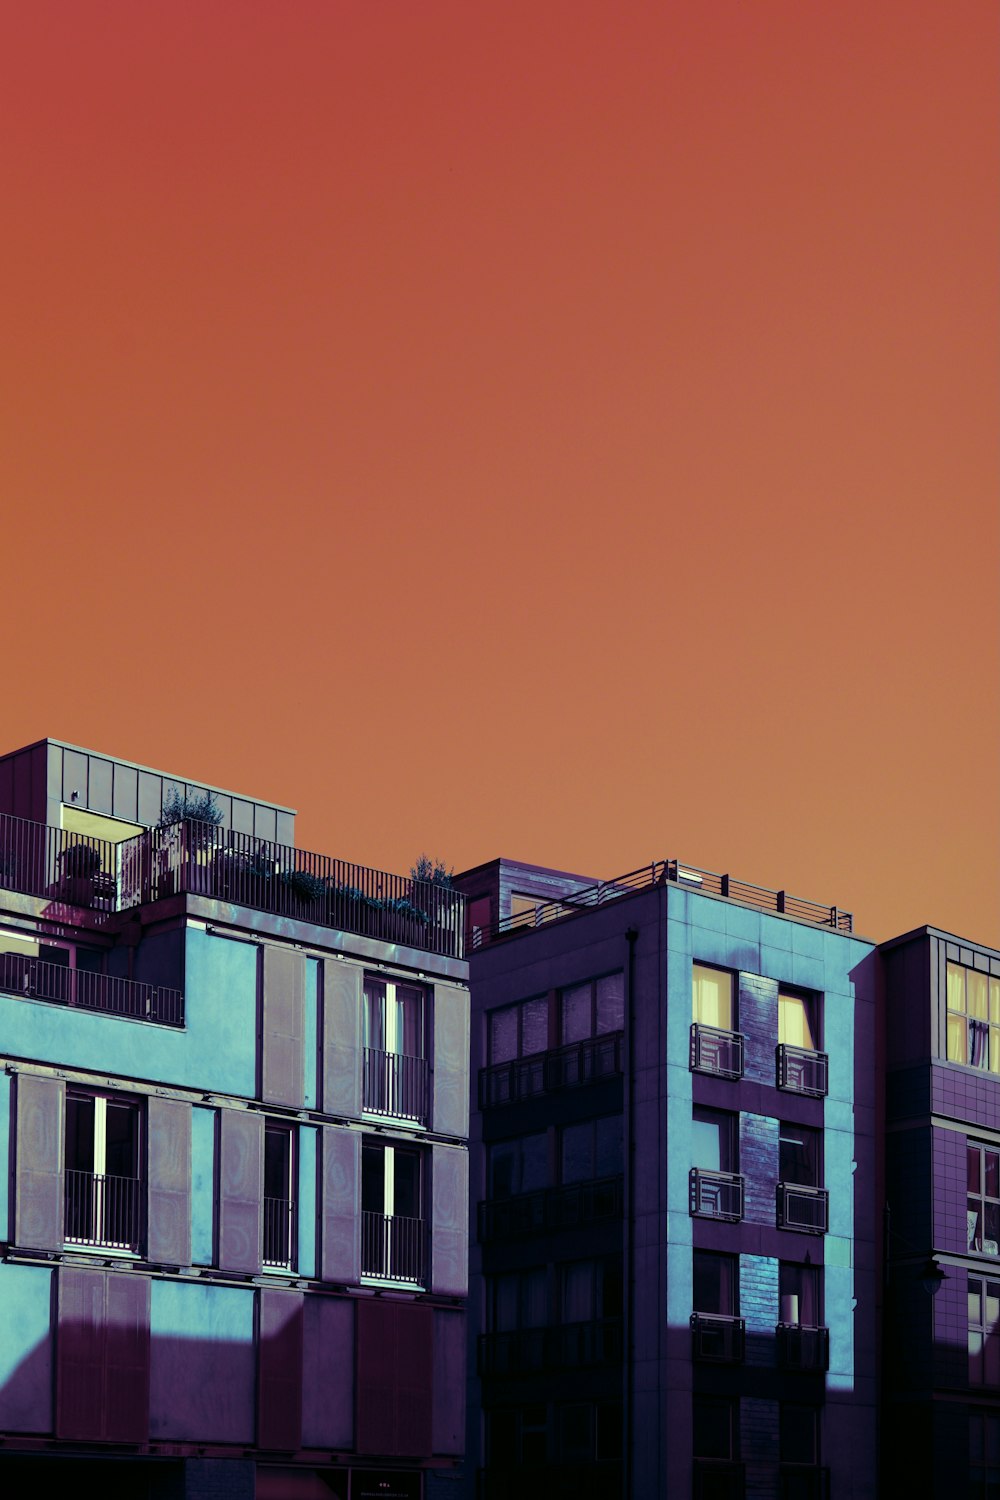 edifício de concreto marrom sob o céu azul durante o dia